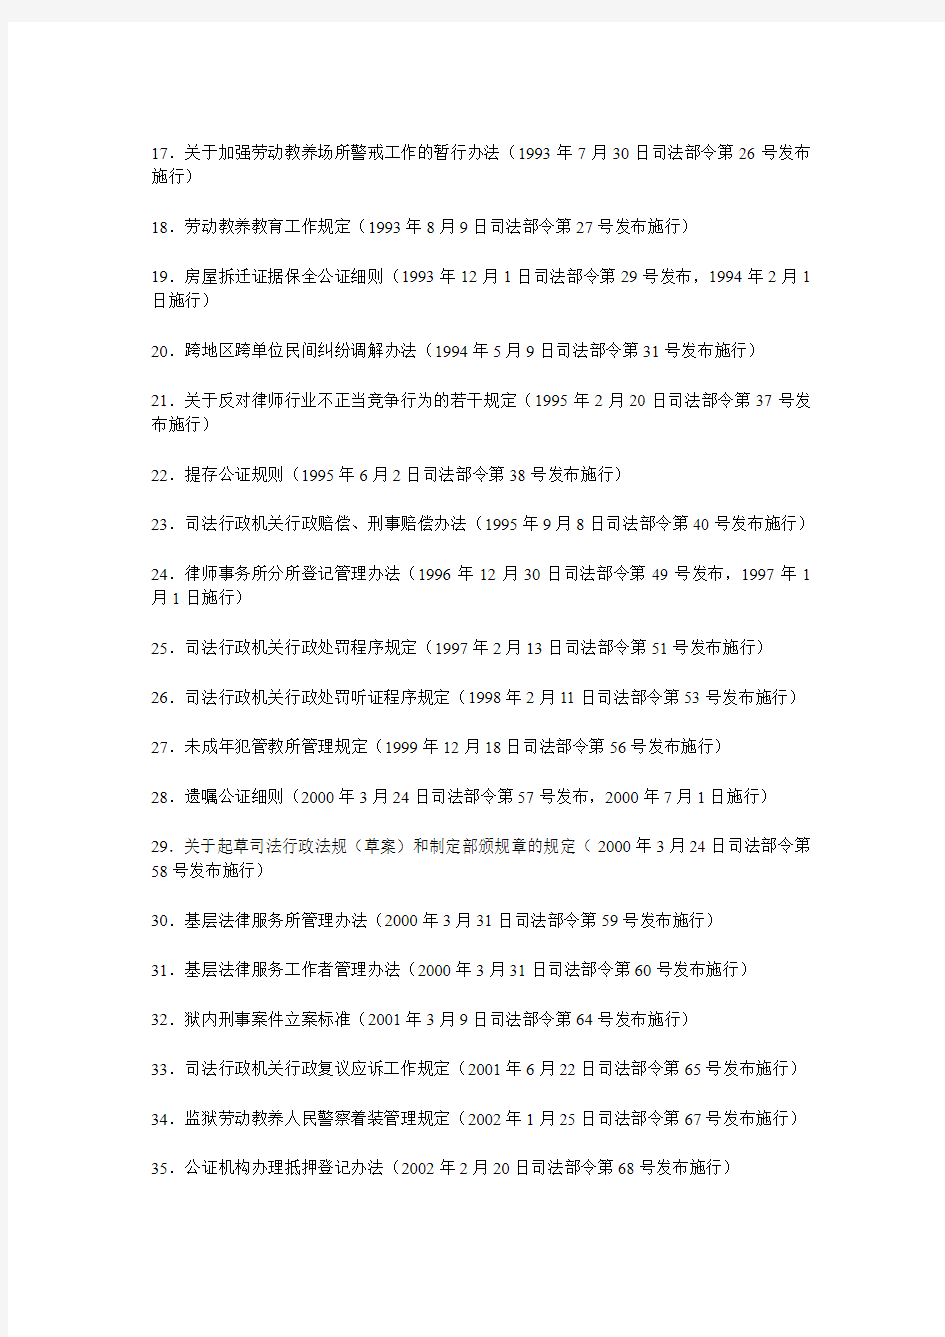 中华人民共和国司法部公告 第101号关于公布现行有效司法行政规章目录的公告